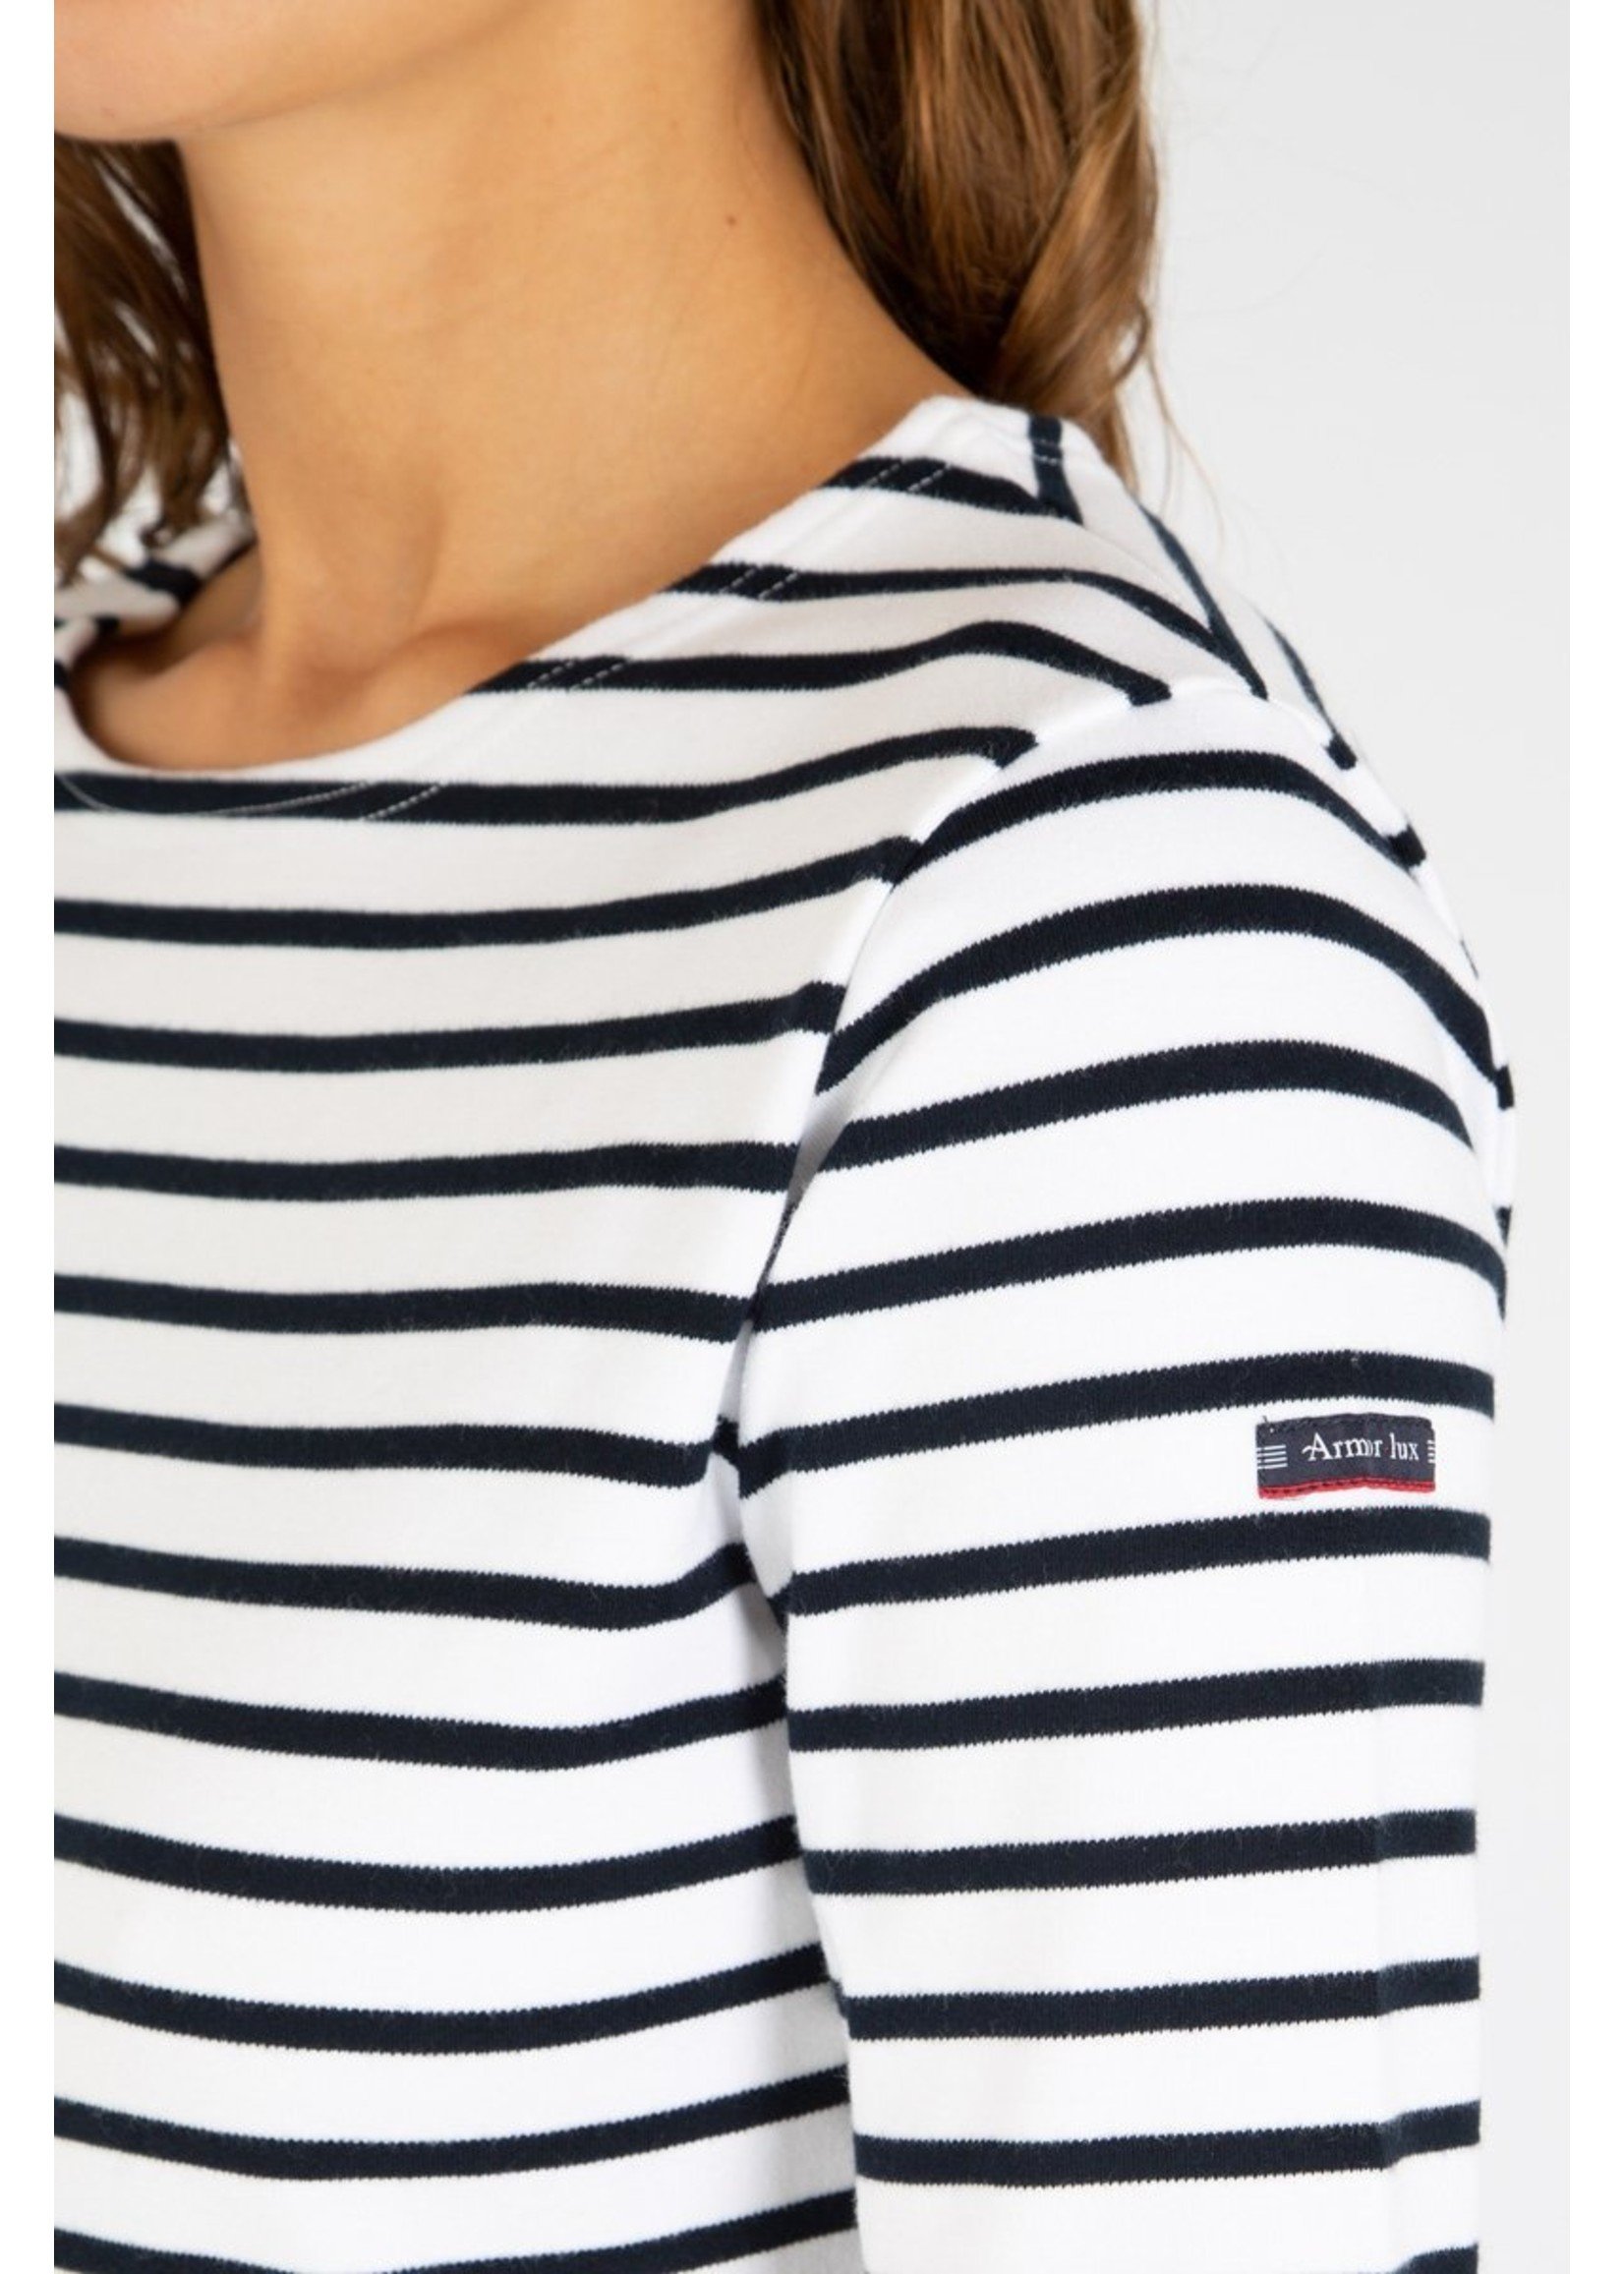 ARMOR-LUX Women's Cancale sailor shirt